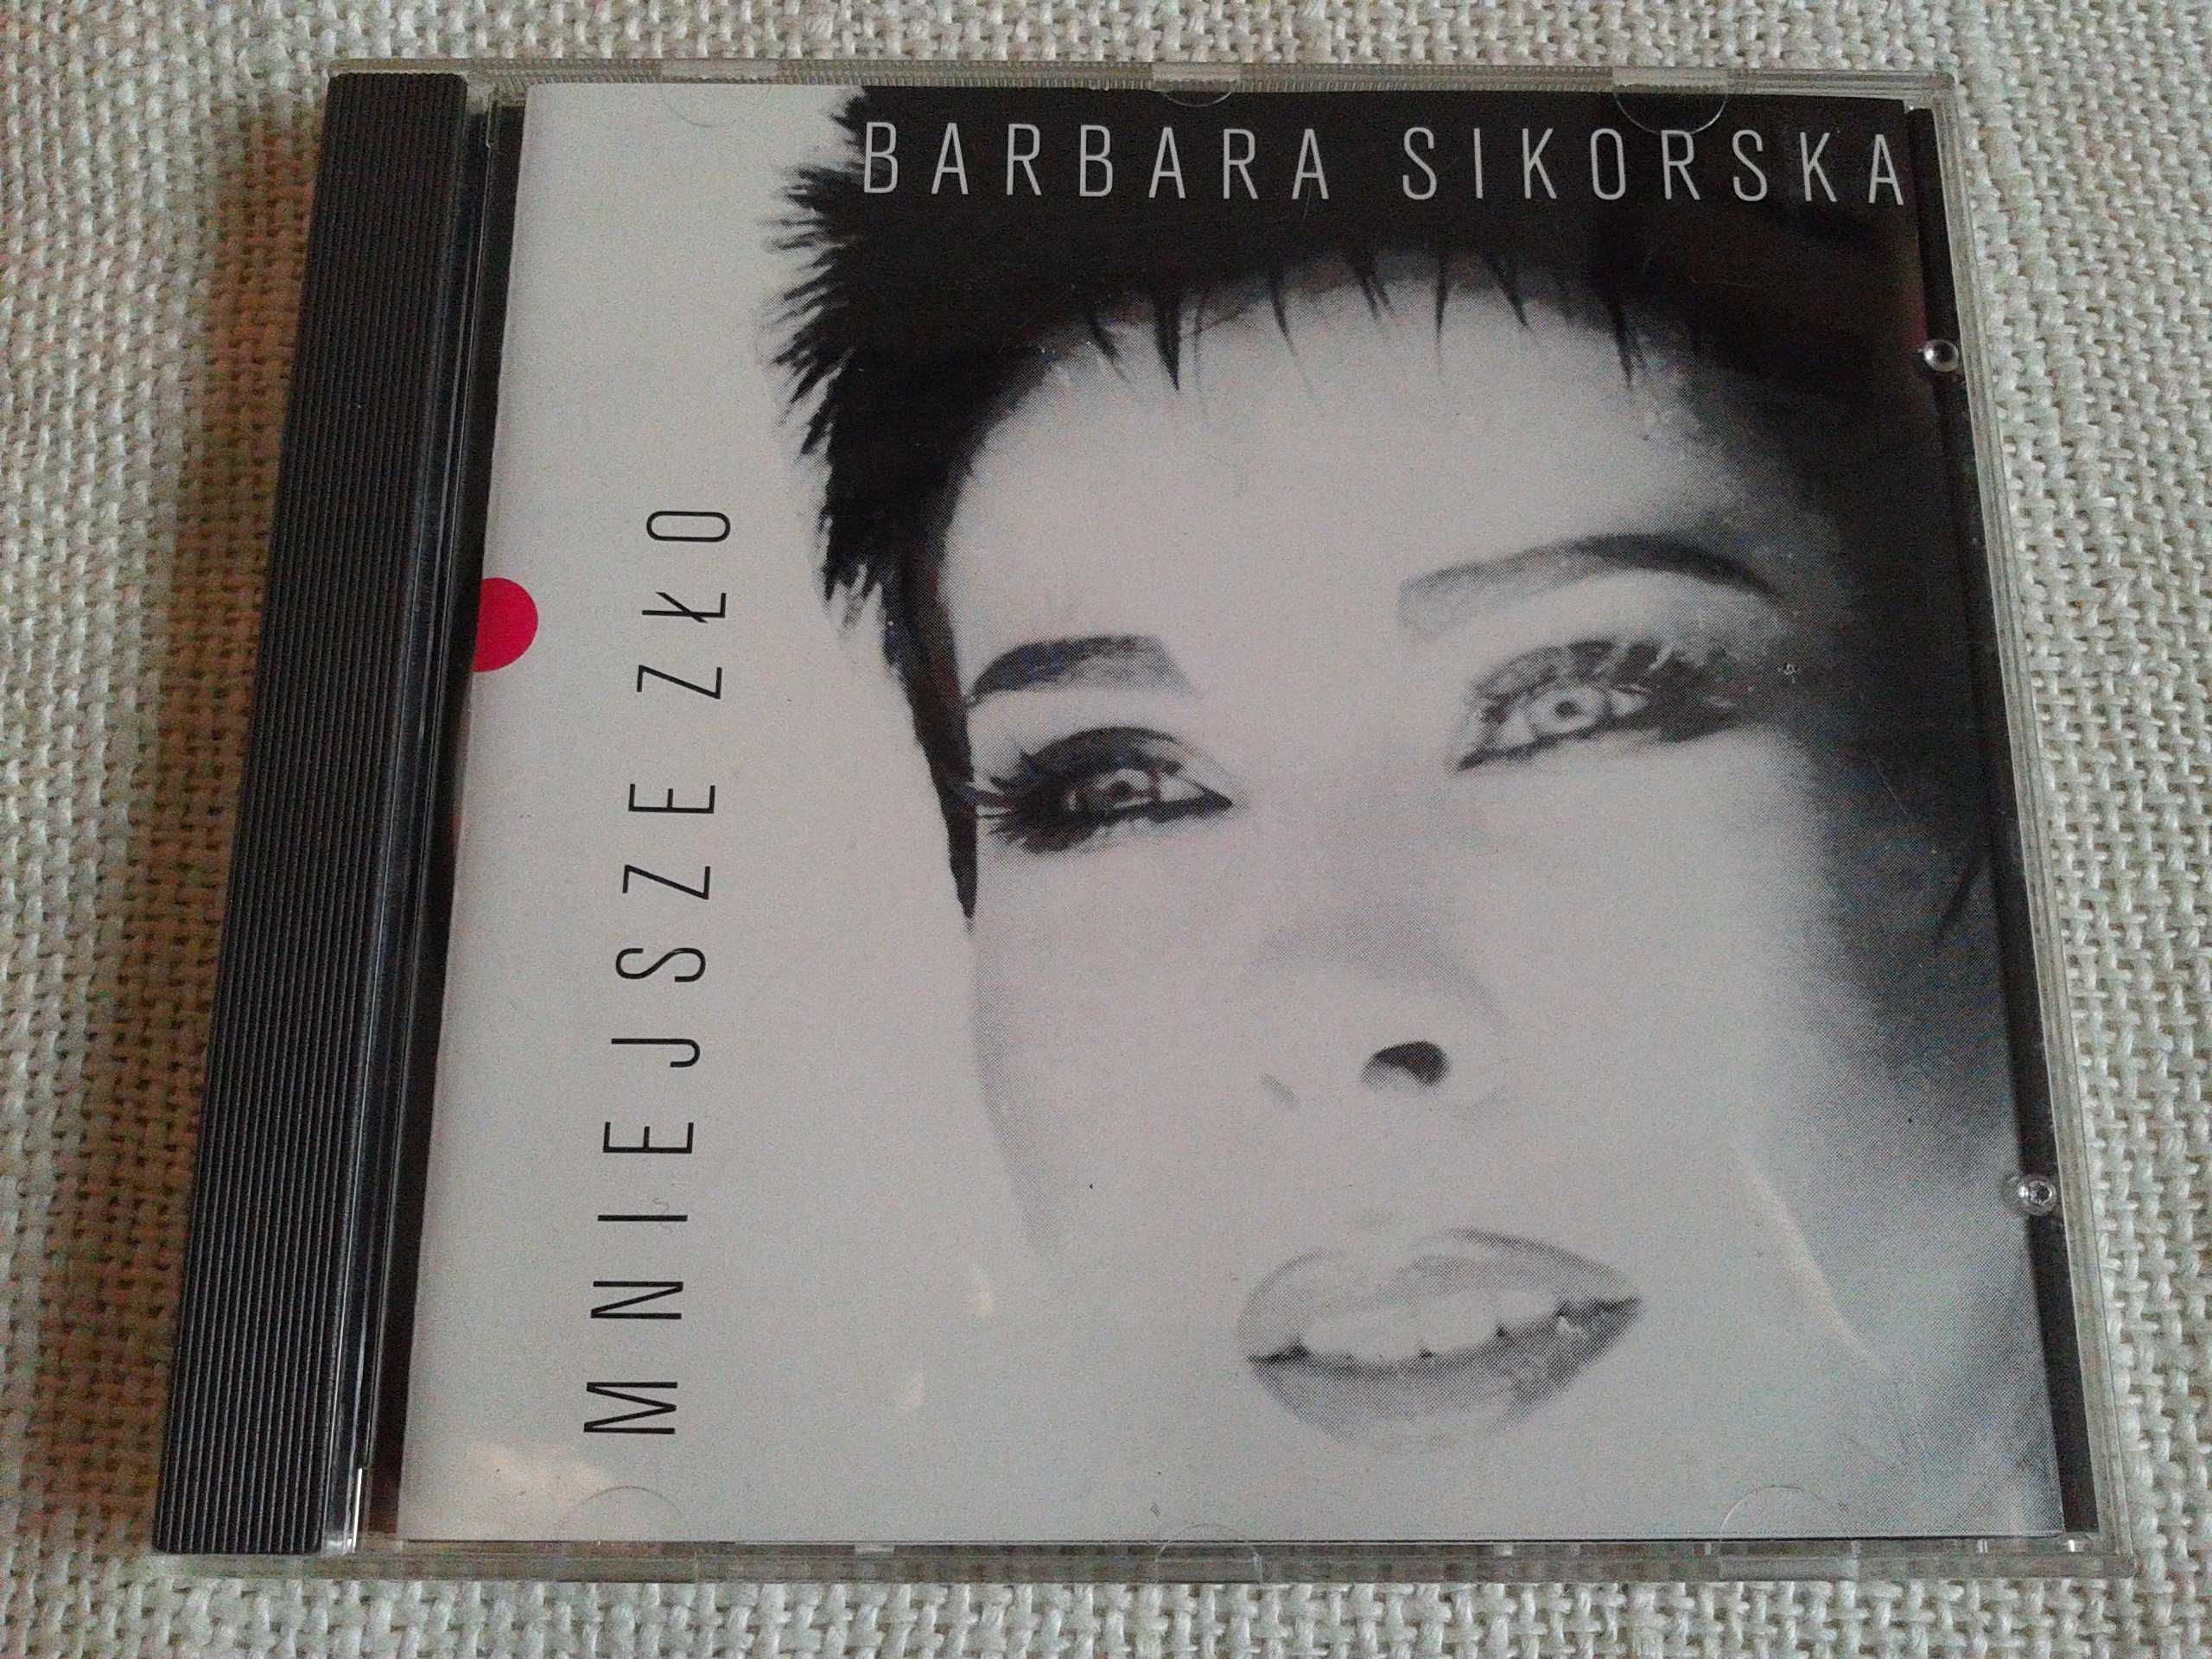 Barbara Sikorska – Mniejsze zło  1992  CD